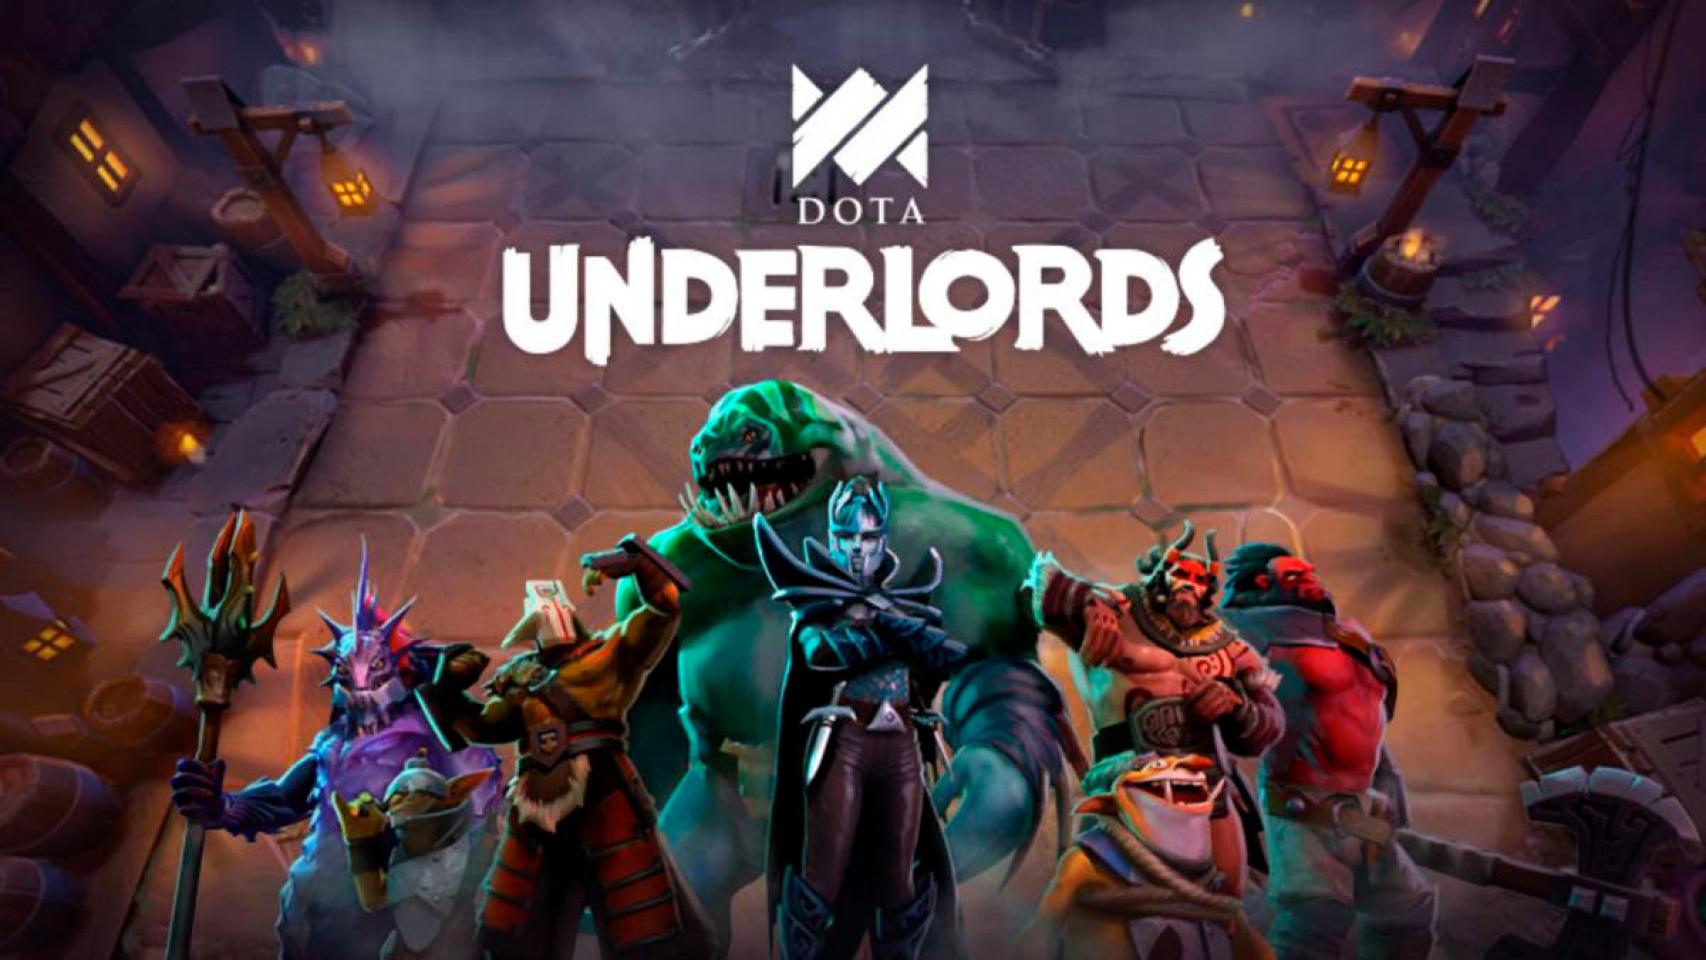 Descarga ya Dota Underlords para Android, el nuevo juego de Valve